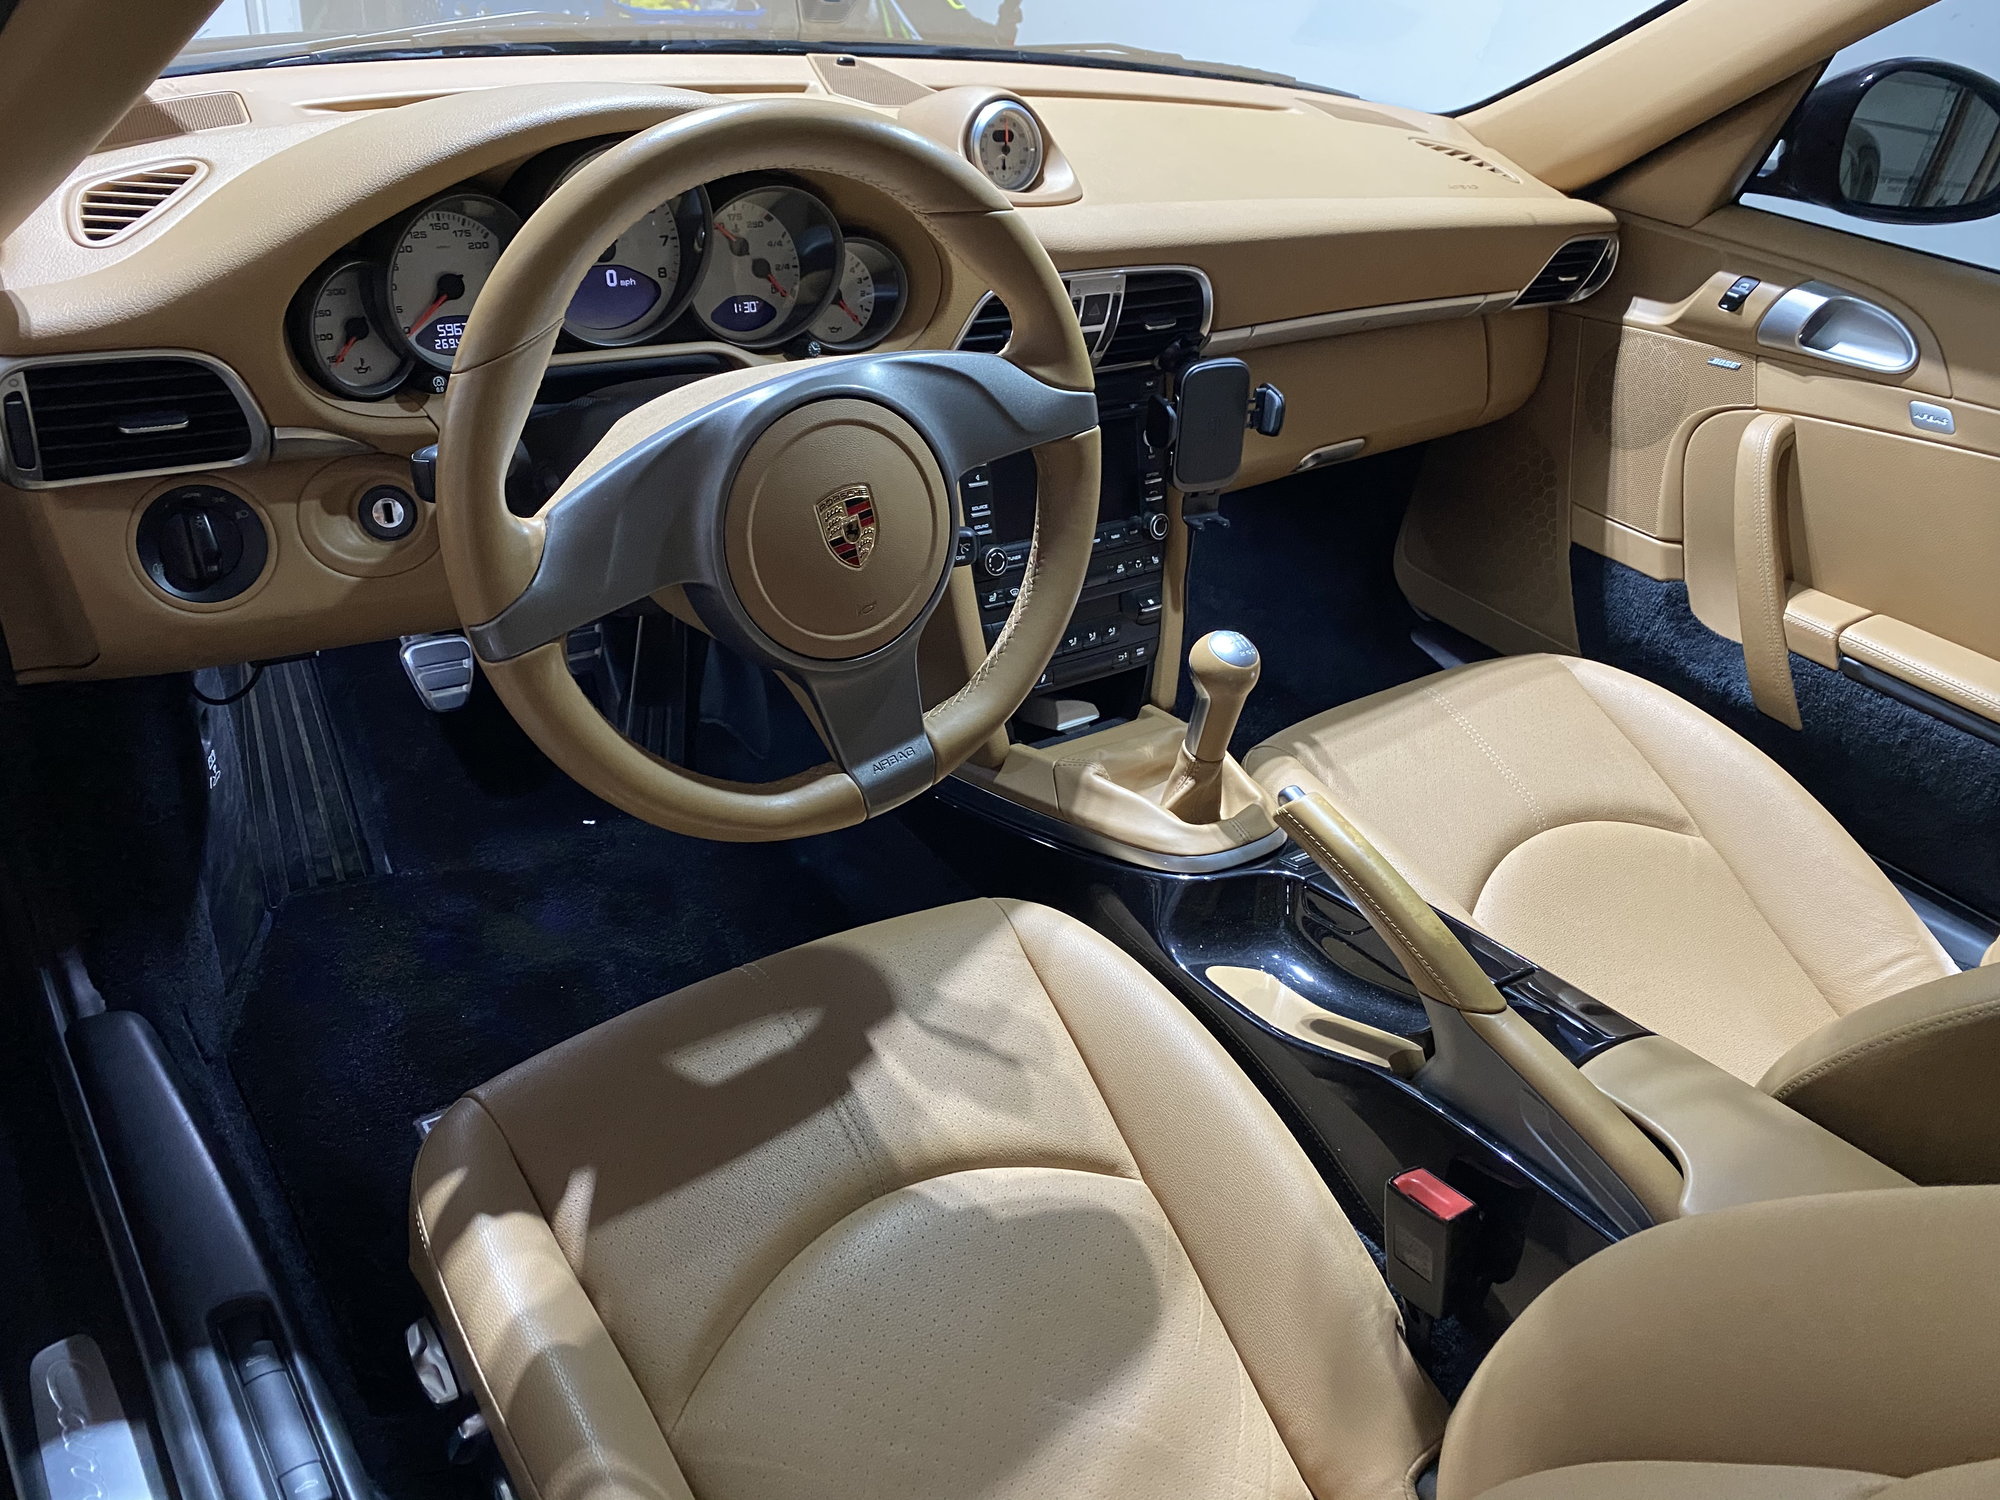 Updating sand beige interior - Rennlist - Porsche Discussion Forums